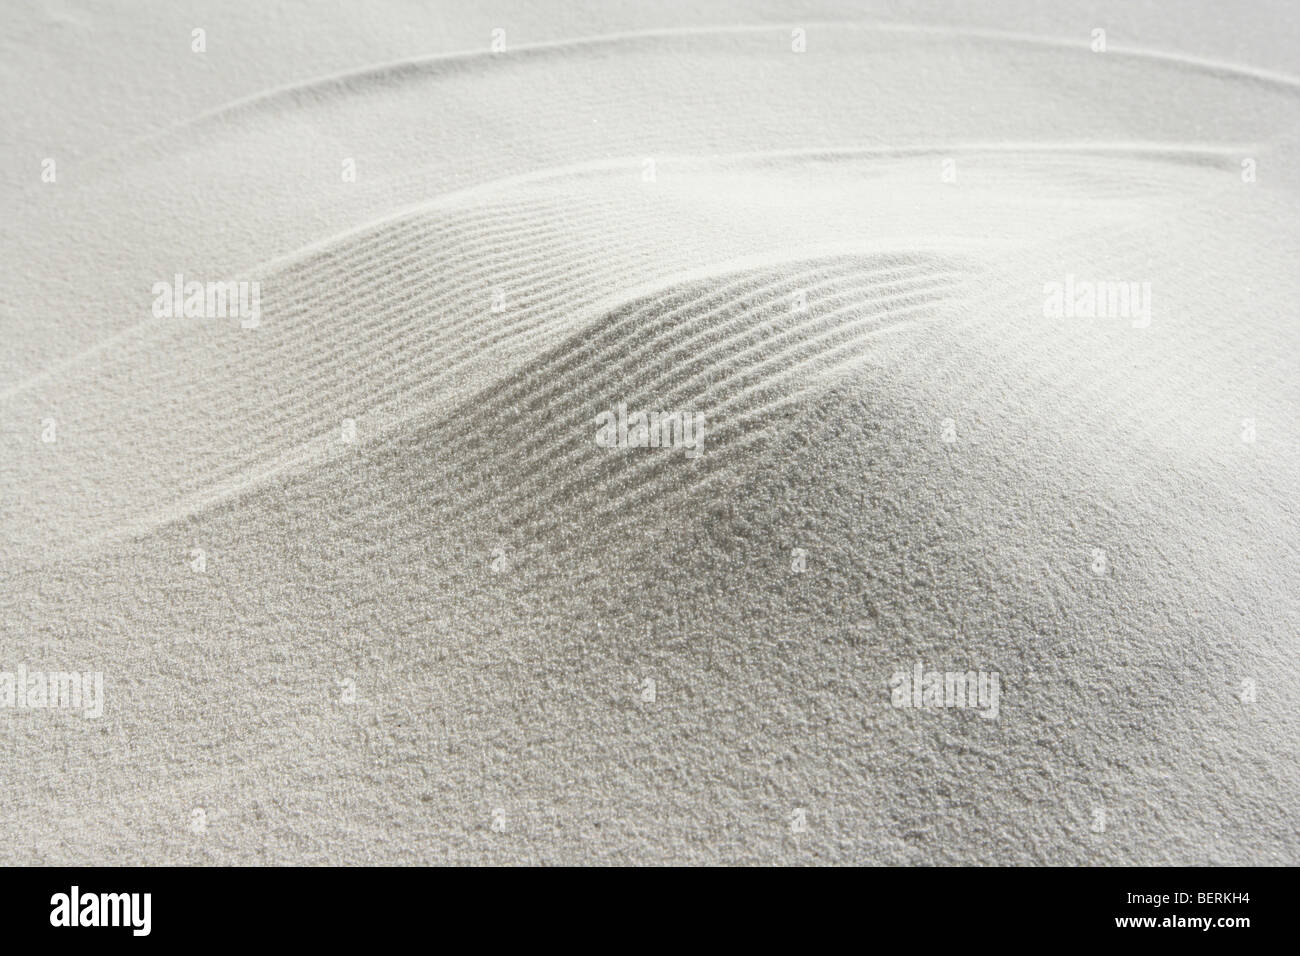 Dune de sable blanc, full frame, copy space Banque D'Images